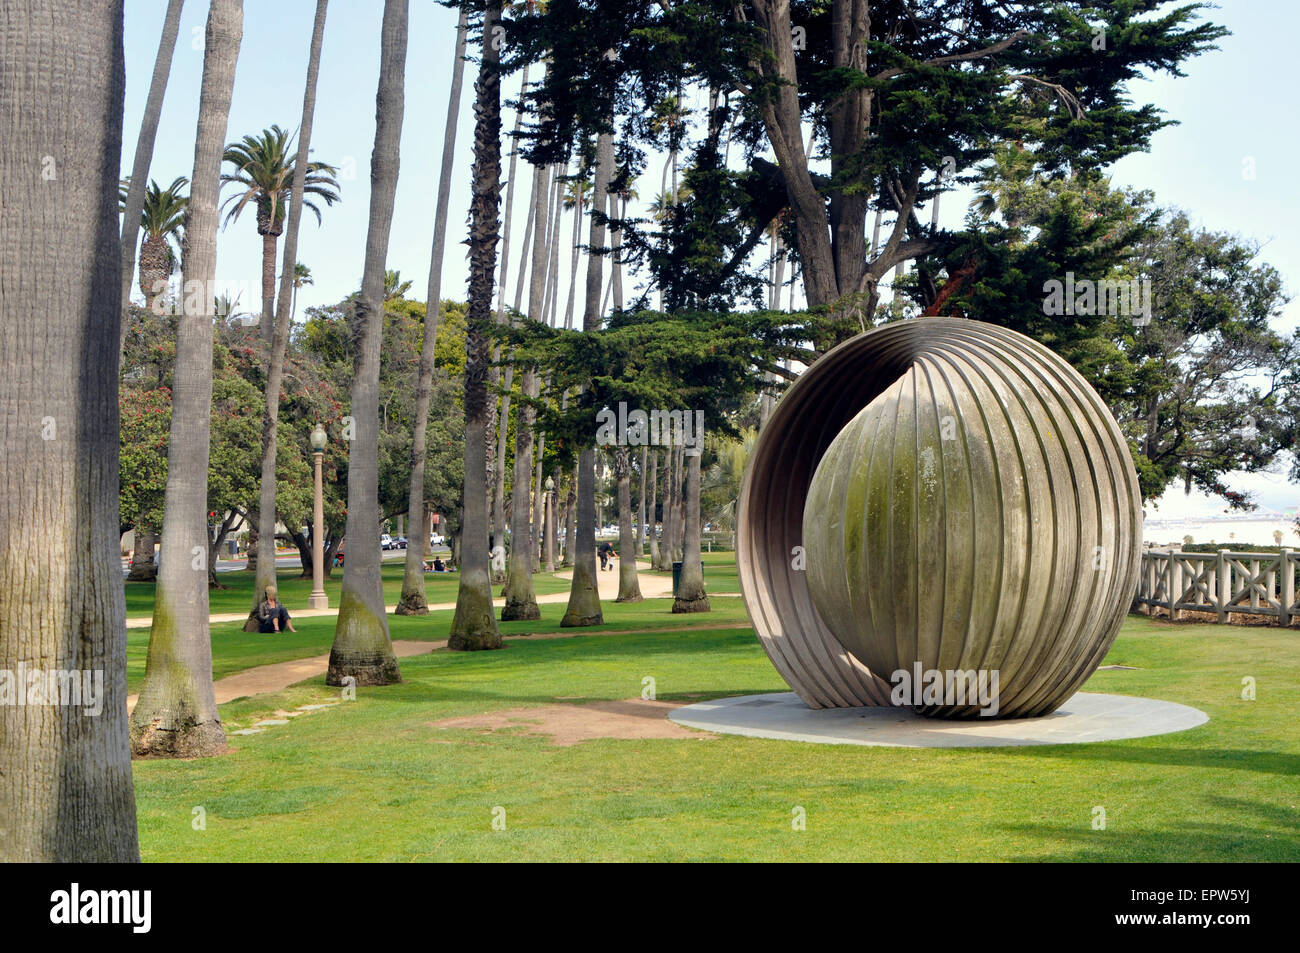 Santa Monica, 25-acre Palisades Park, Sculpture 'Gestation' Stock Photo